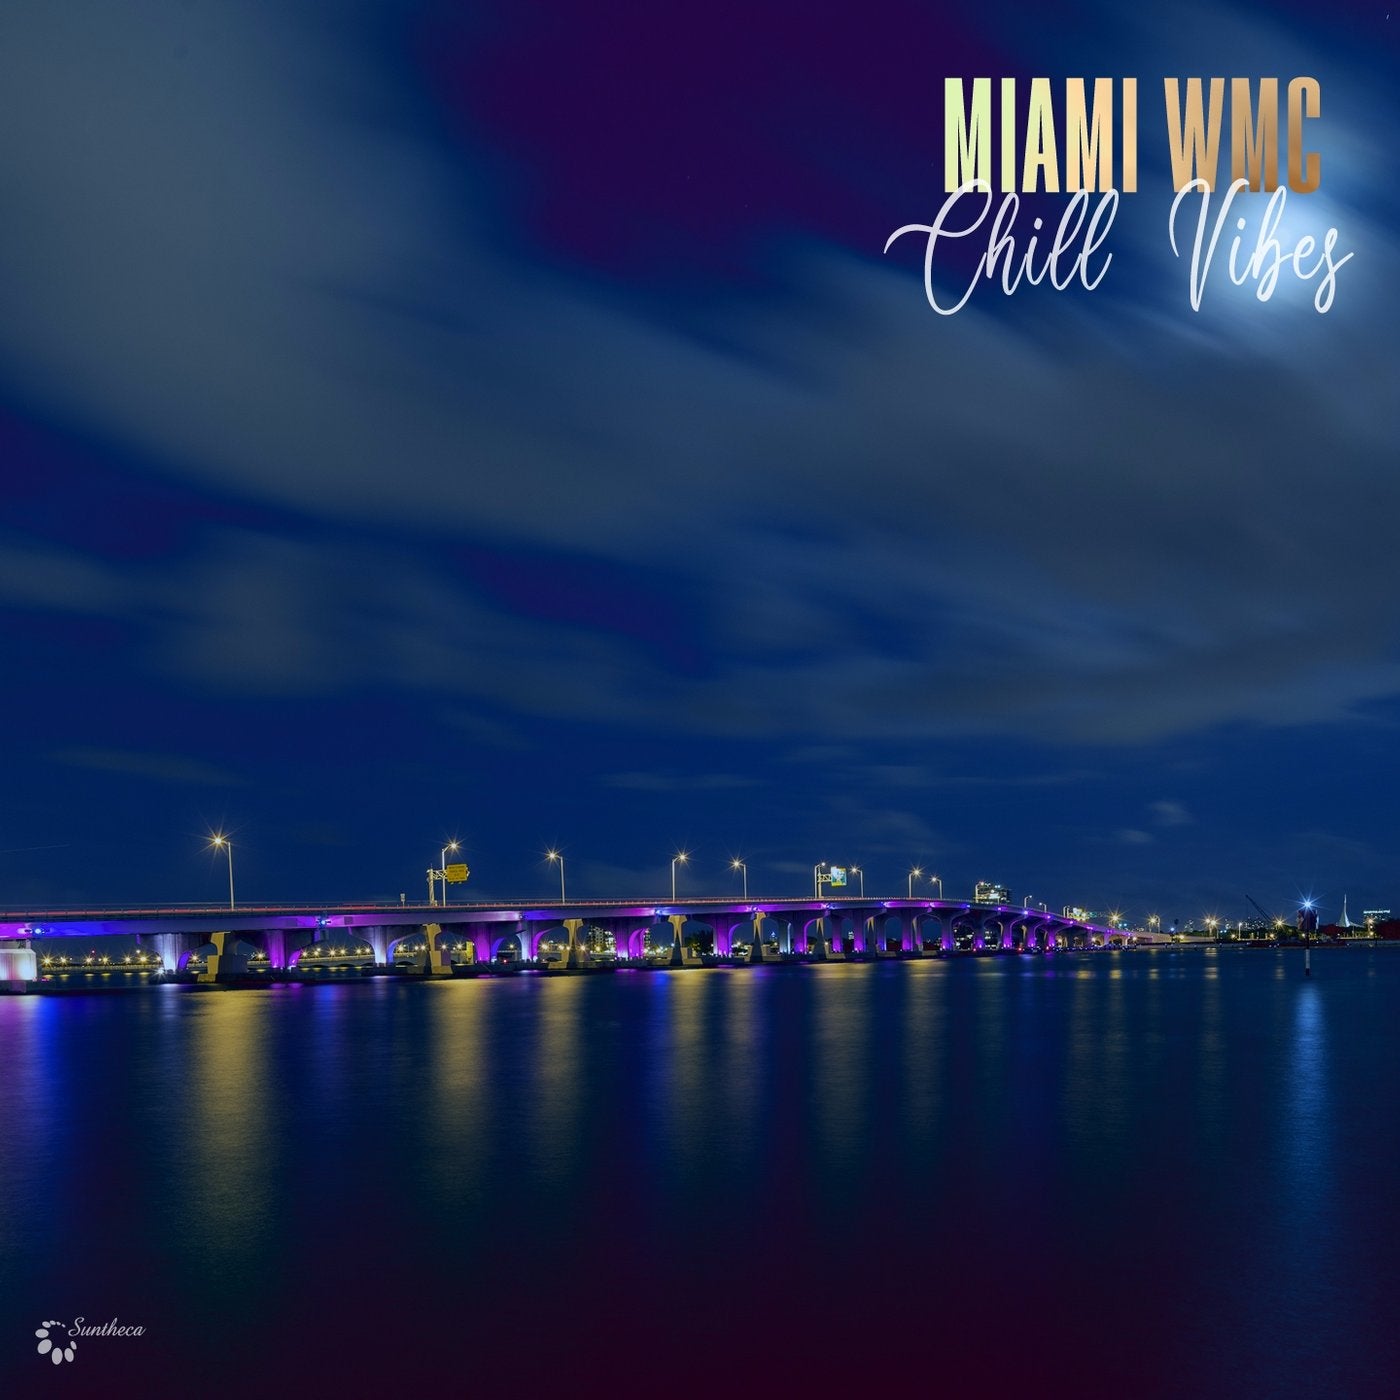 Miami WMC Chill Vibes